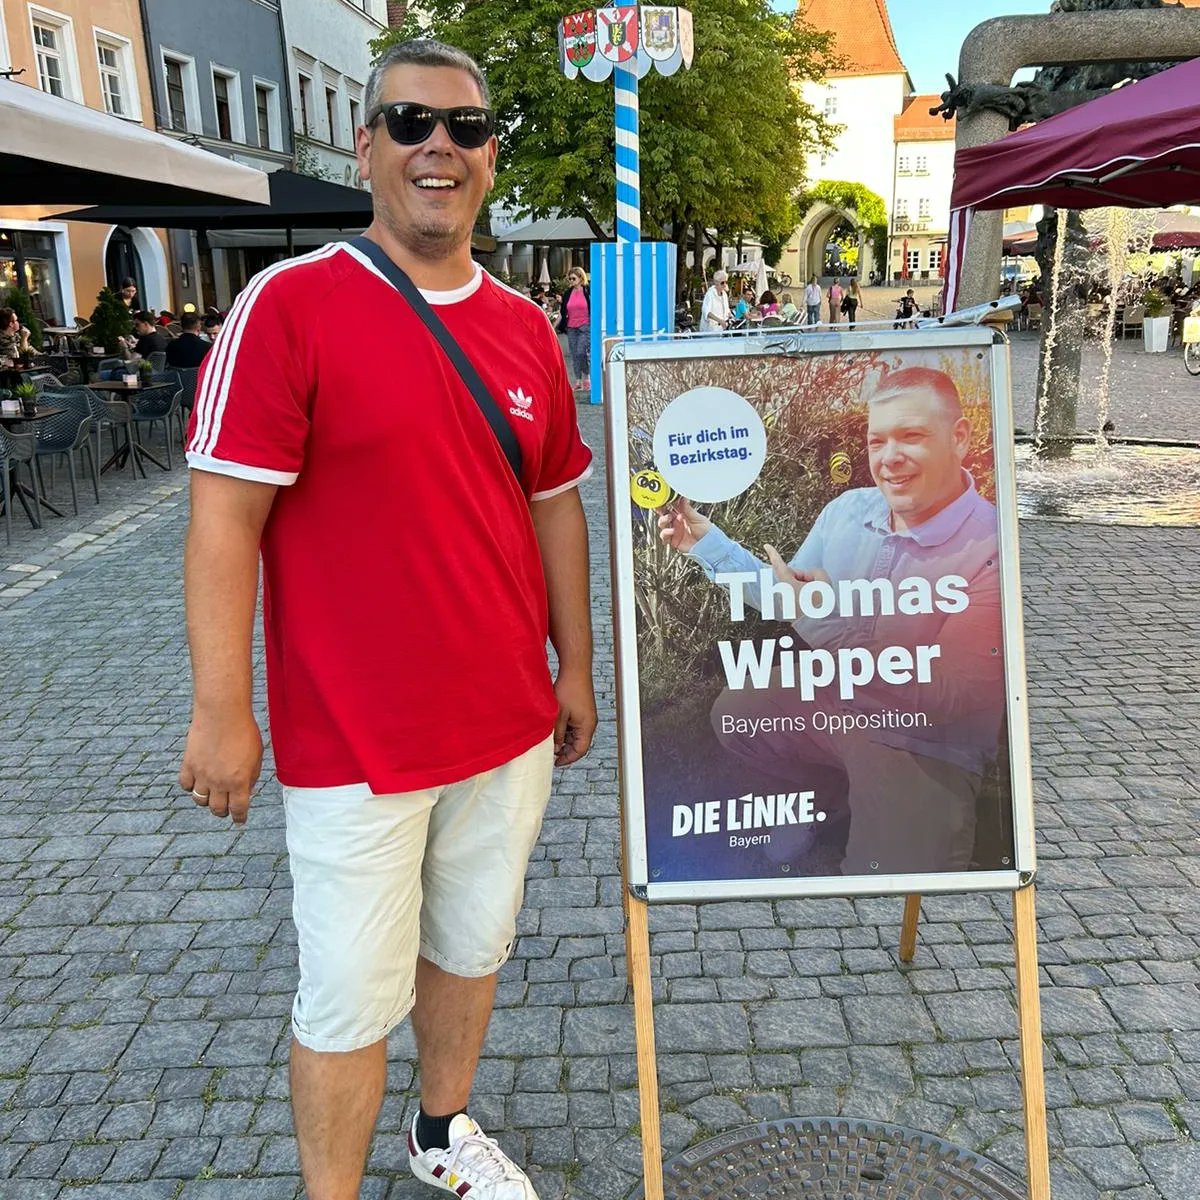 Heute für #DieLinke auf der Straße. Gemeinsam @rupp_adelheid, @LINKE_Bayern und euch für ein solidarisches Bayern. Am 08.10. alle Stimmen für die Linke. #DieLinke #BayernsOpposition #BayernWahl #NieMehrCSU #DasGuteLebenFürAlle